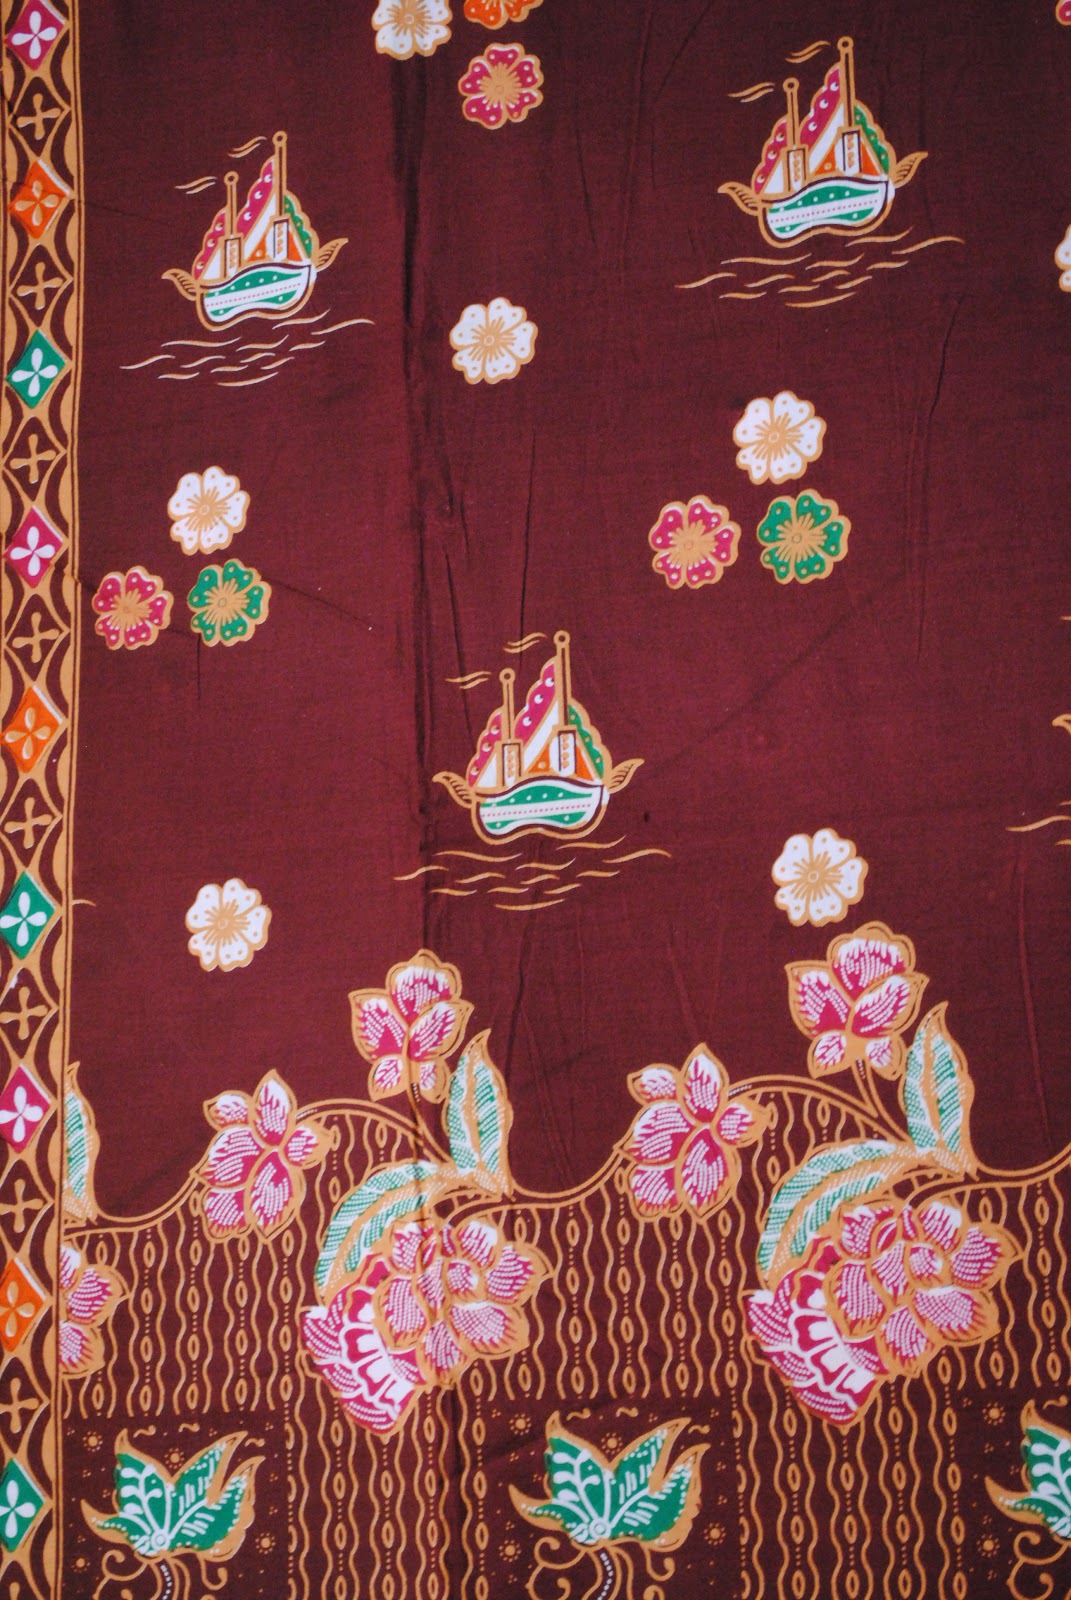 Mirabella Batik jambi: Macam-macam motif batik jambi yg ada di toko kami